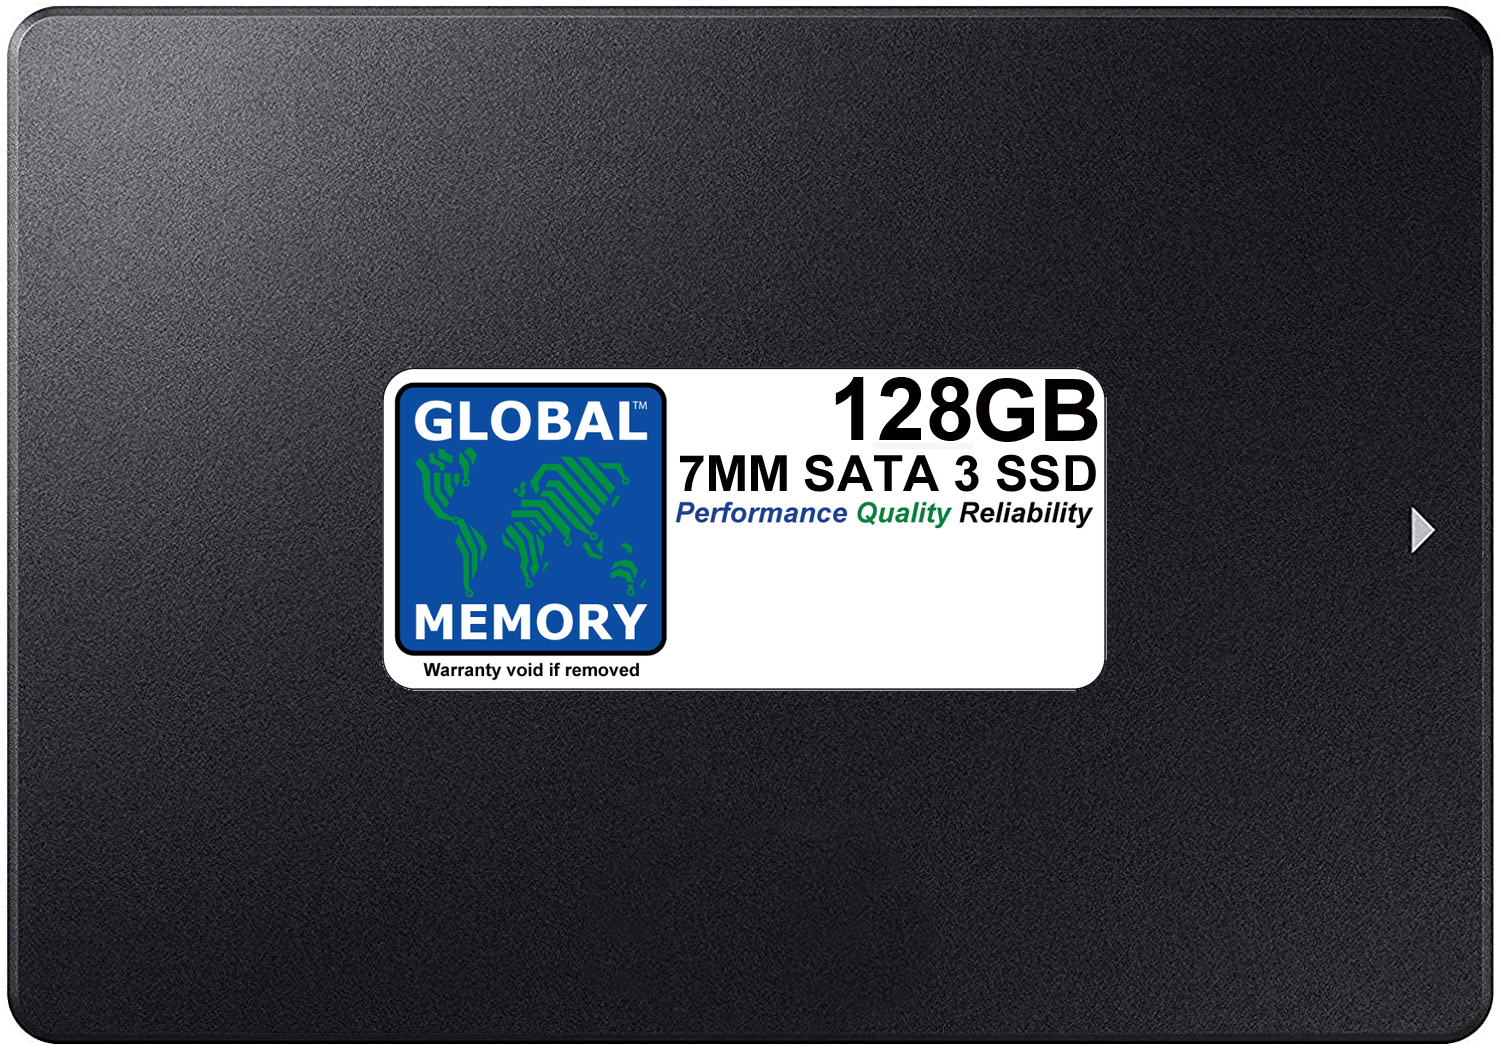 128GB 7mm 2.5" SATA 3 SSD FOR MACBOOK PRO NON RETINA (2011 - 2012) - Click Image to Close